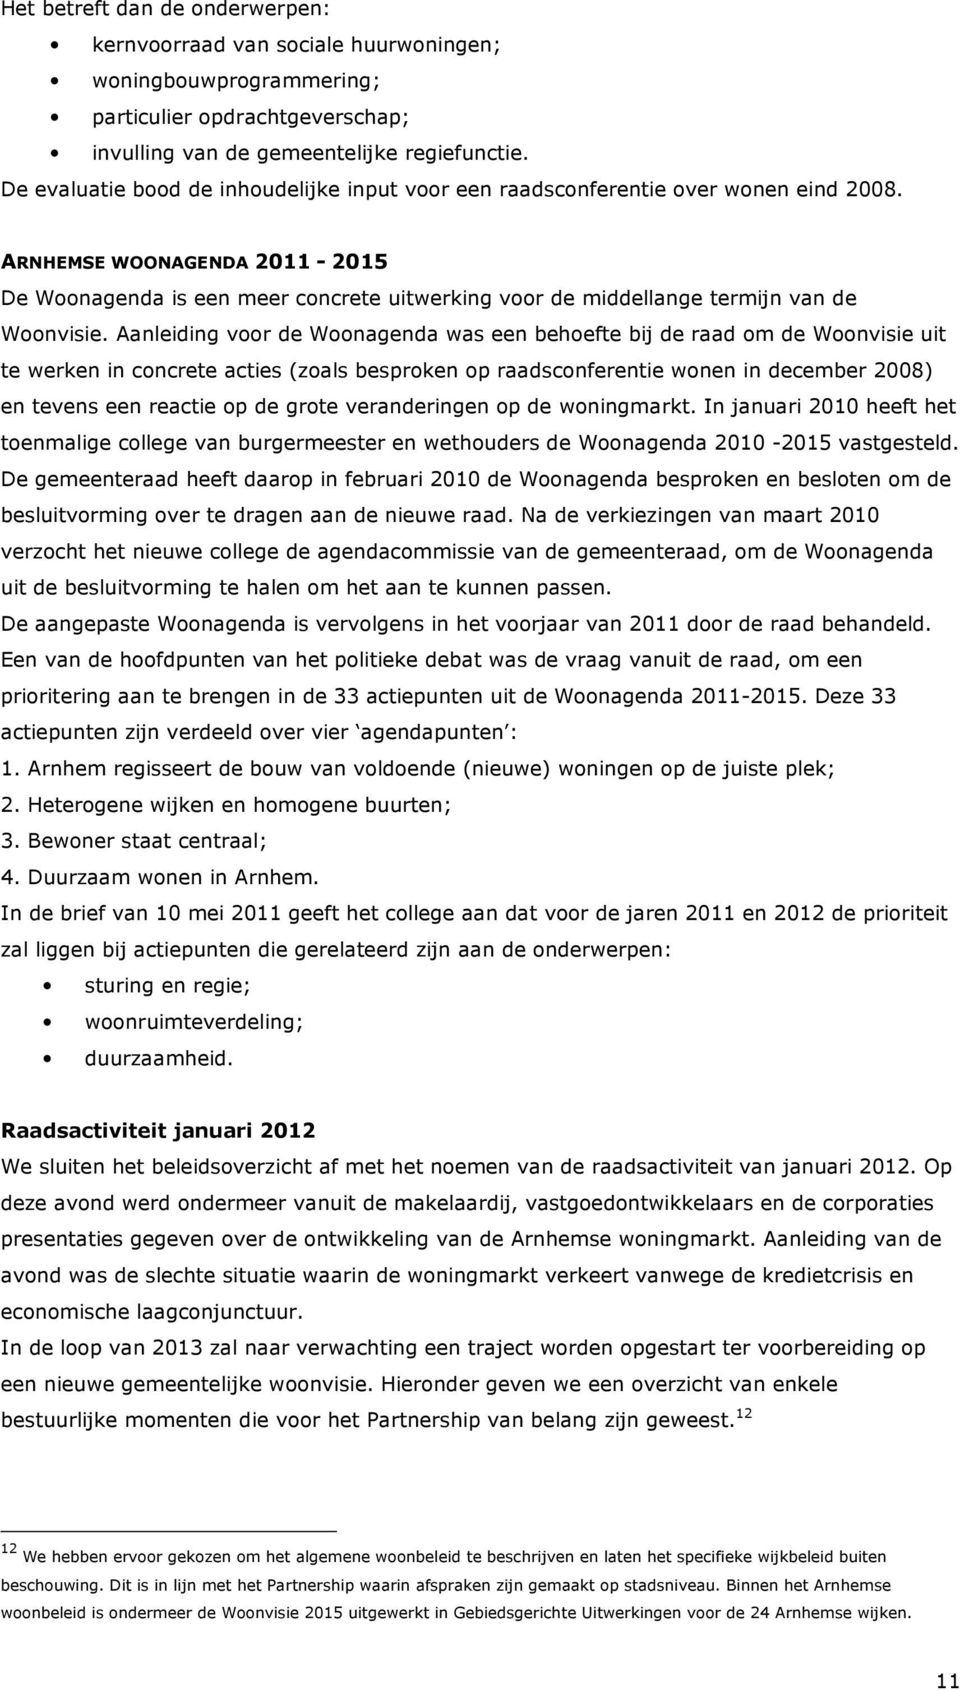 ARNHEMSE WOONAGENDA 2011-2015 De Woonagenda is een meer concrete uitwerking voor de middellange termijn van de Woonvisie.